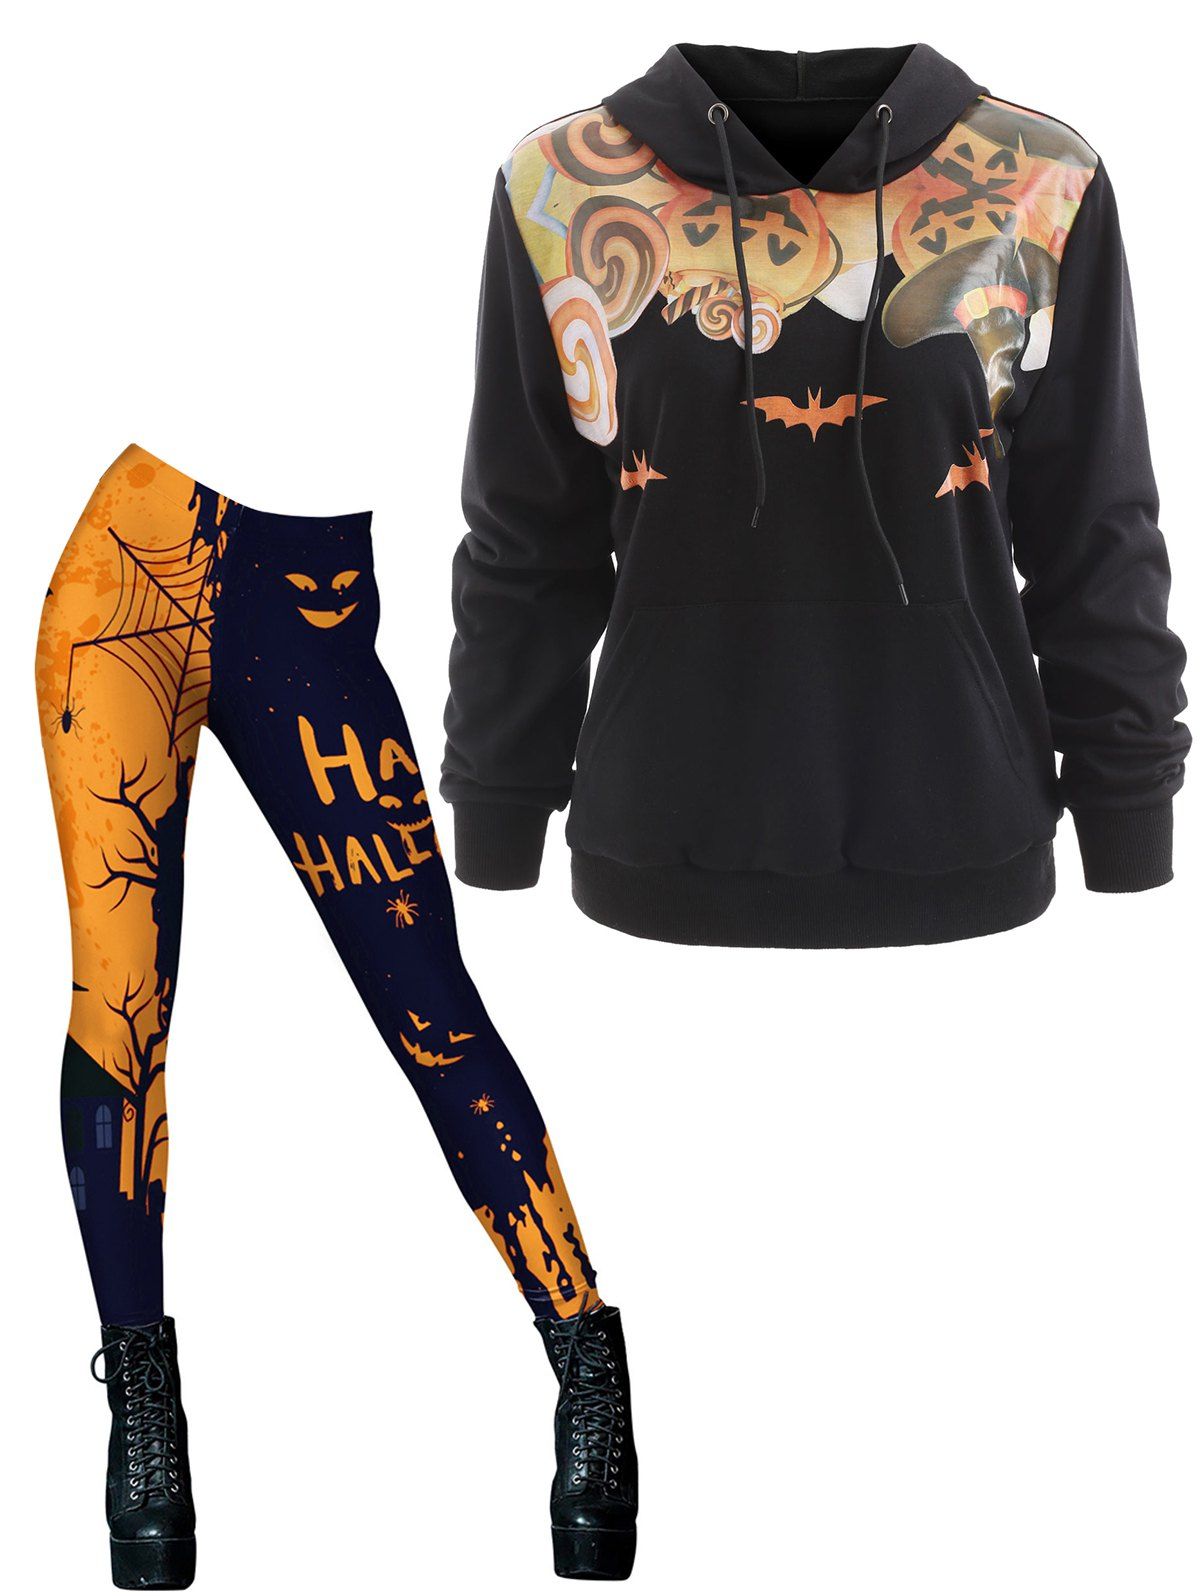 Pumpkin Lantern Halloween Hoodie And Colorblock Letter Spider Web Printed Skinny Leggings Set - multicolor S